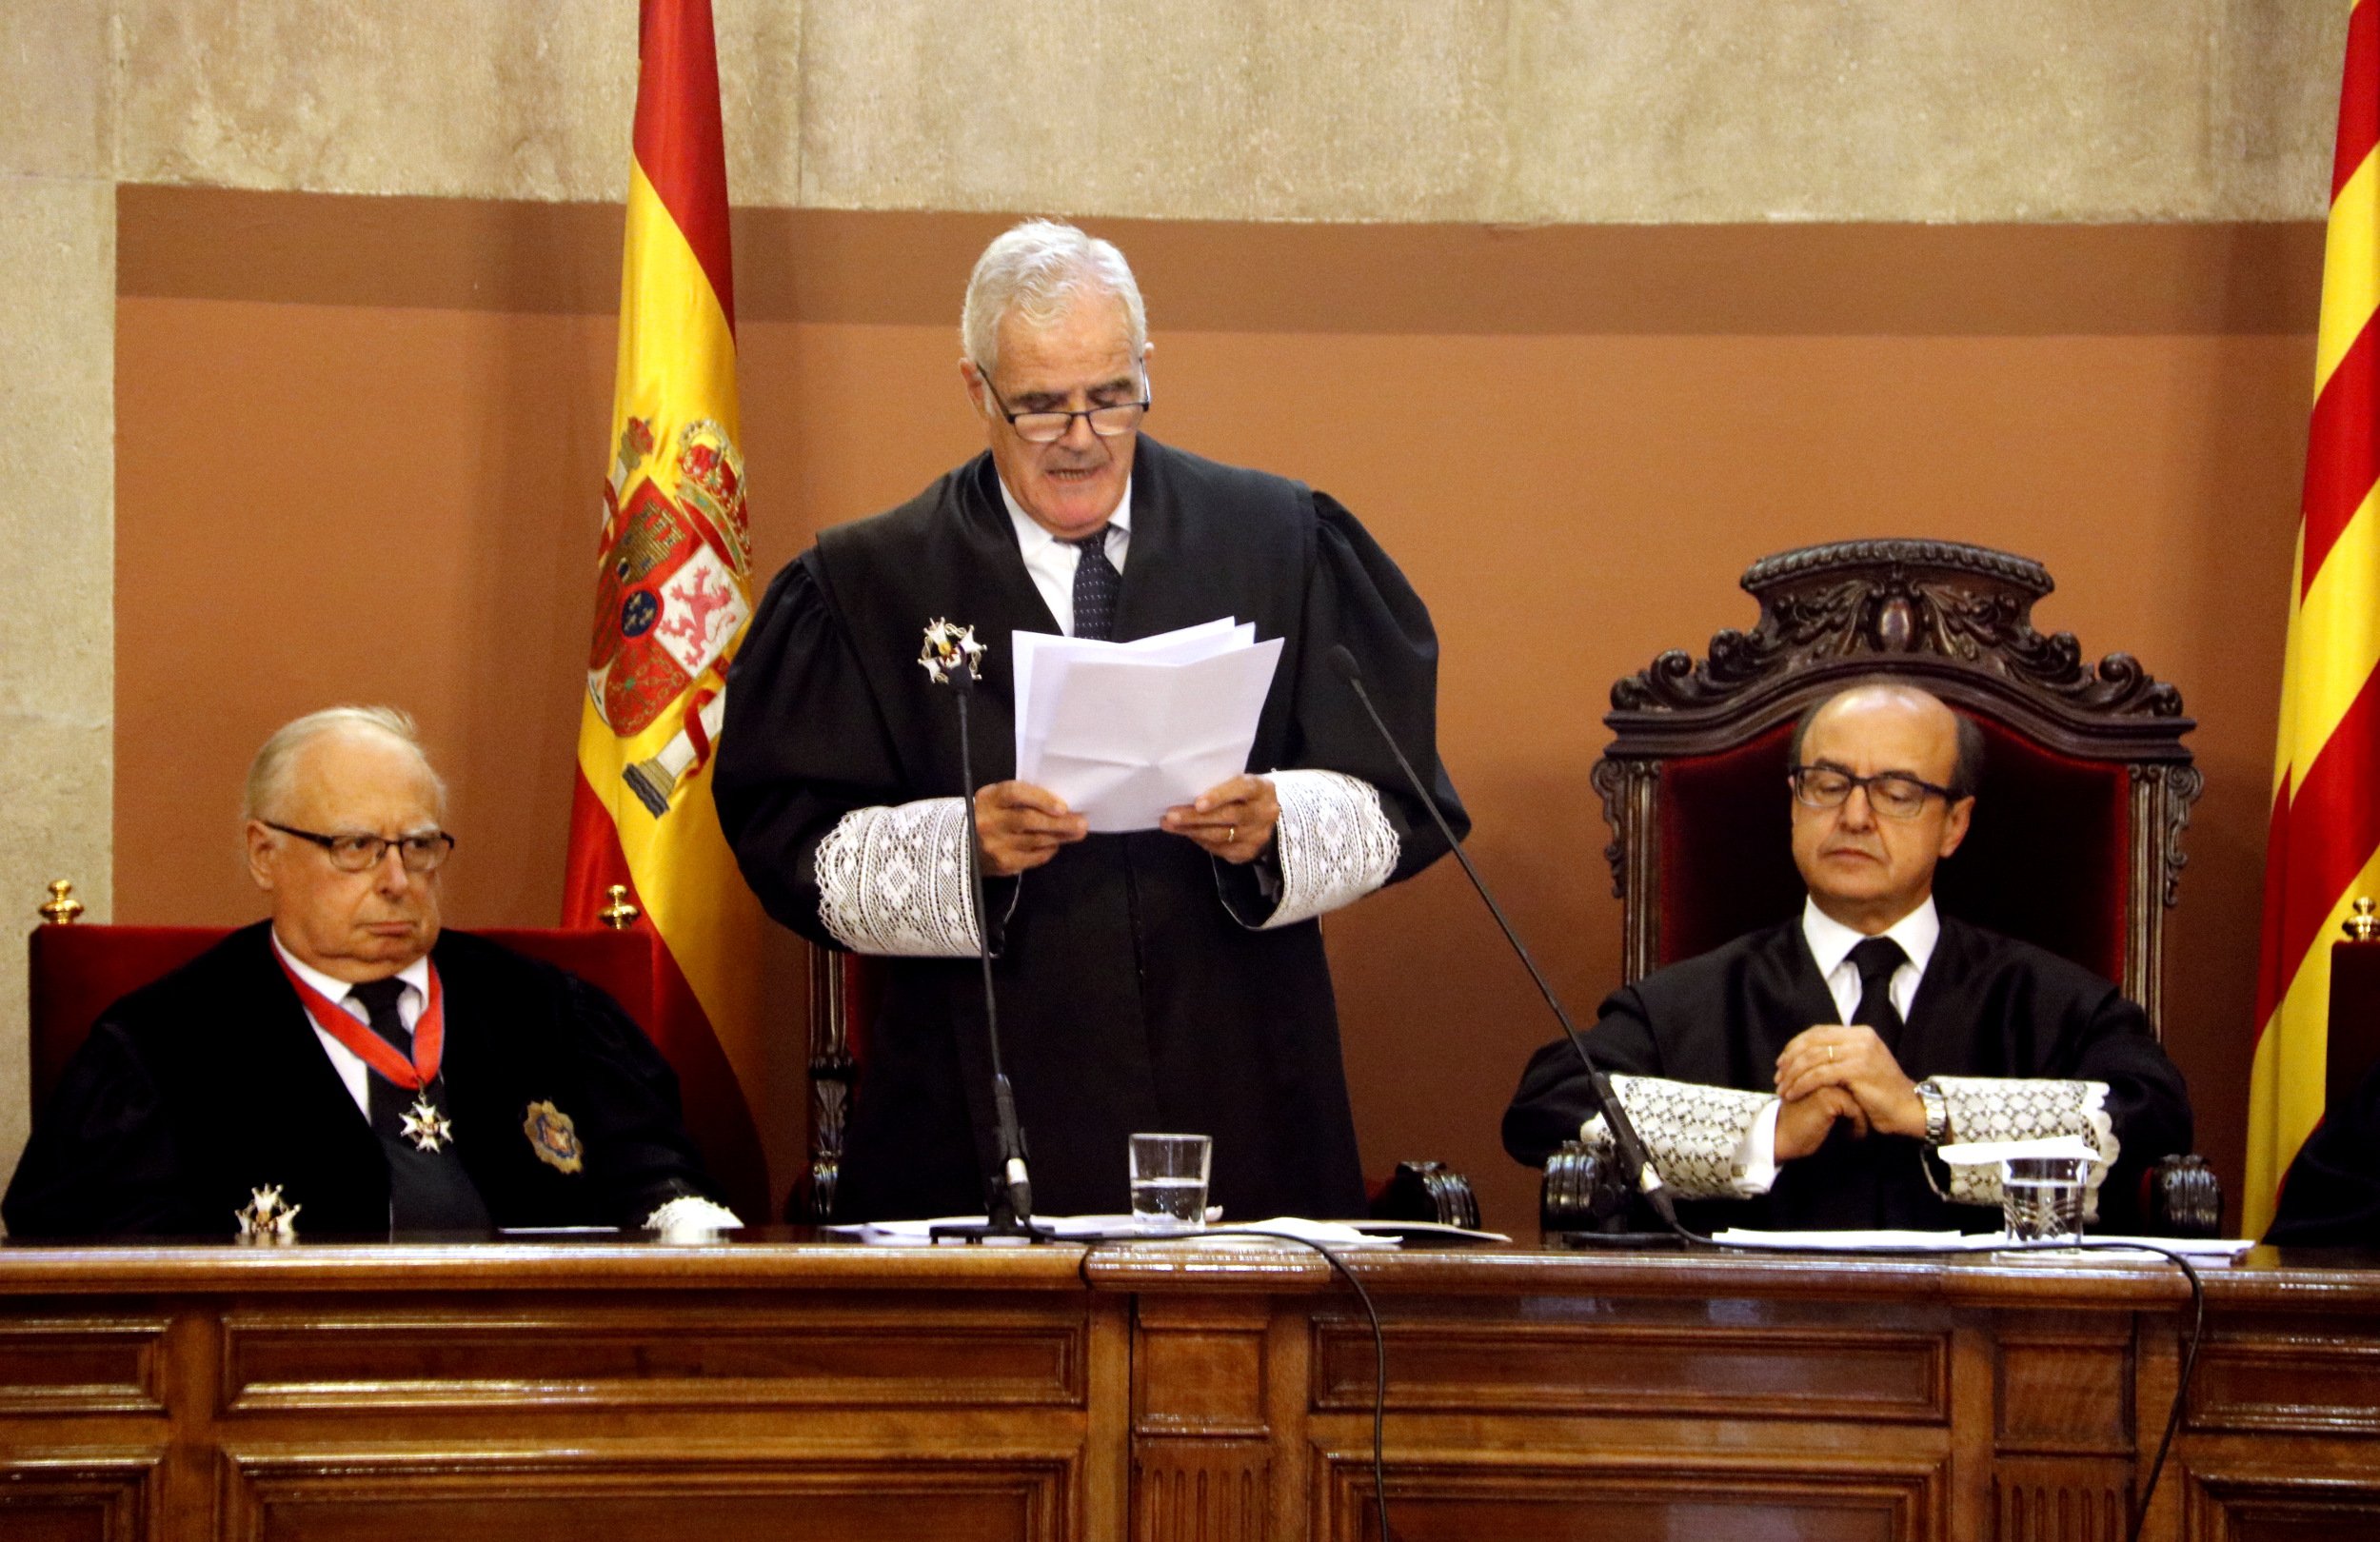 El fiscal superior de Extremadura vincula la muerte de Romero de Tejada al procés